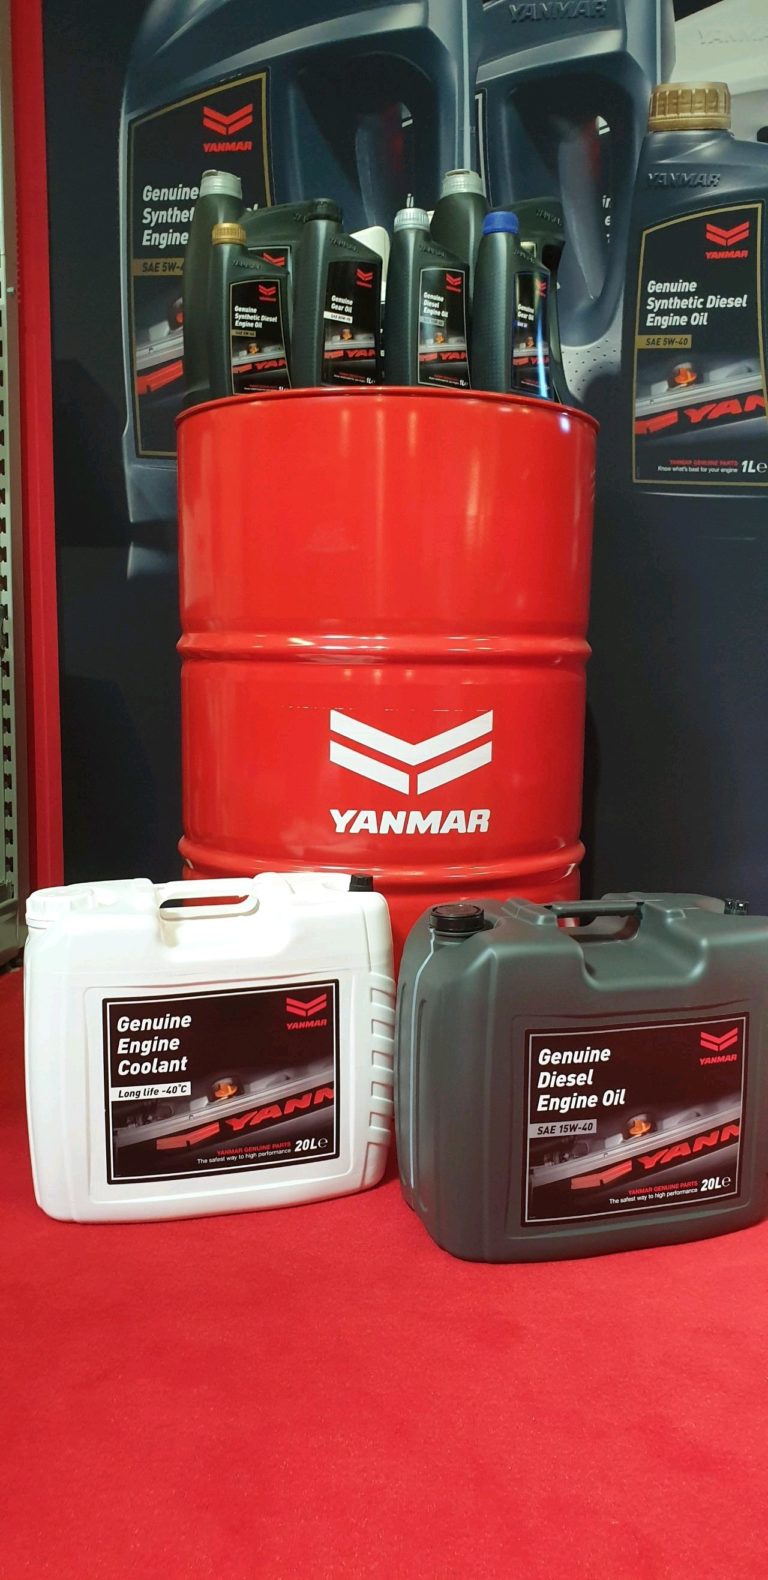 Scopri di più sull'articolo Nuovo olio e coolant Yanmar disponibili!